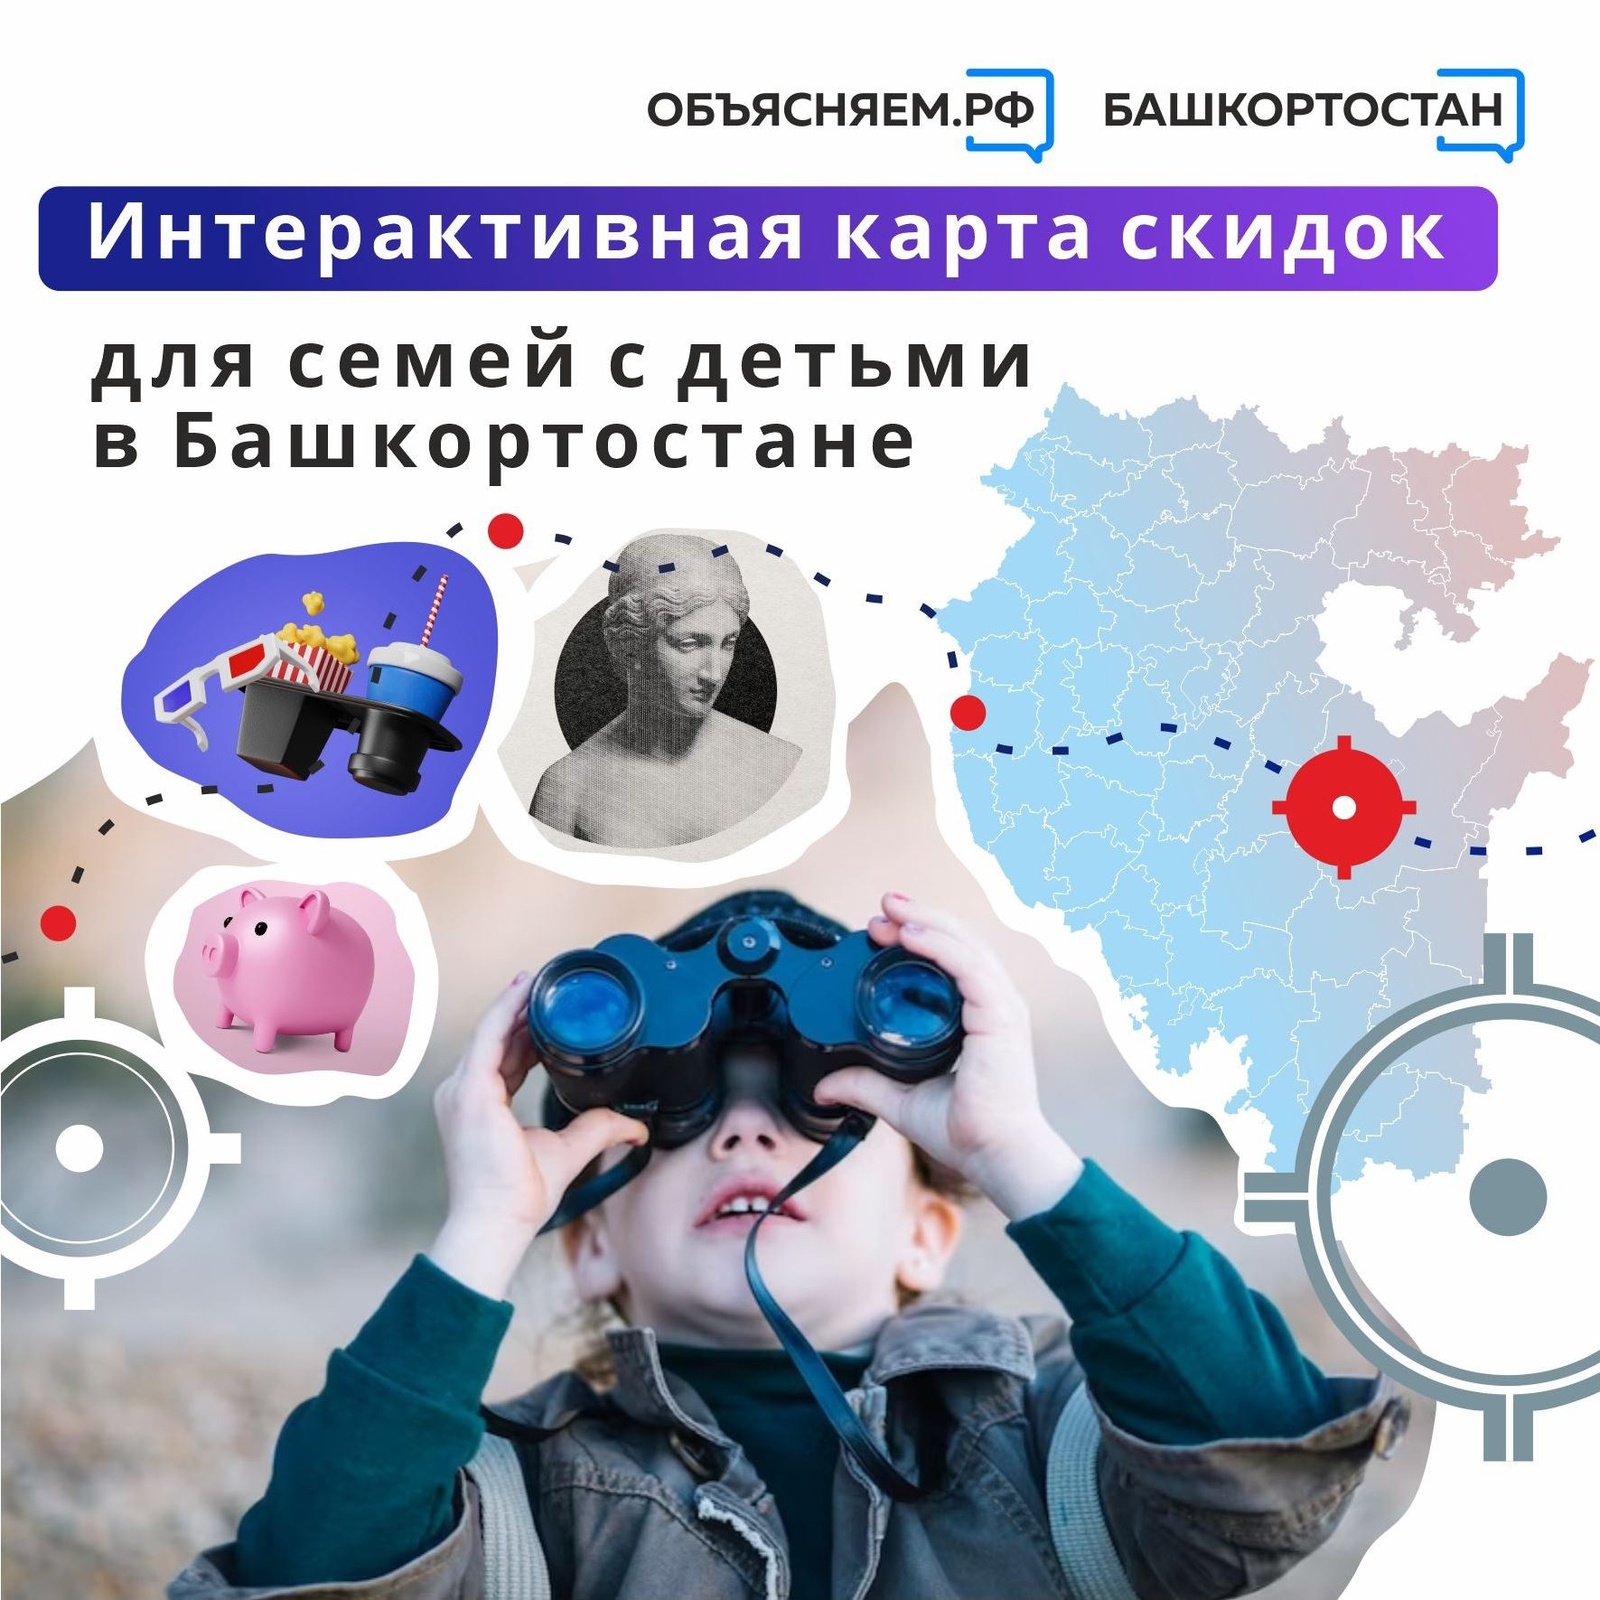 Интерактивная карта скидок для семей с детьми в Башкортостане